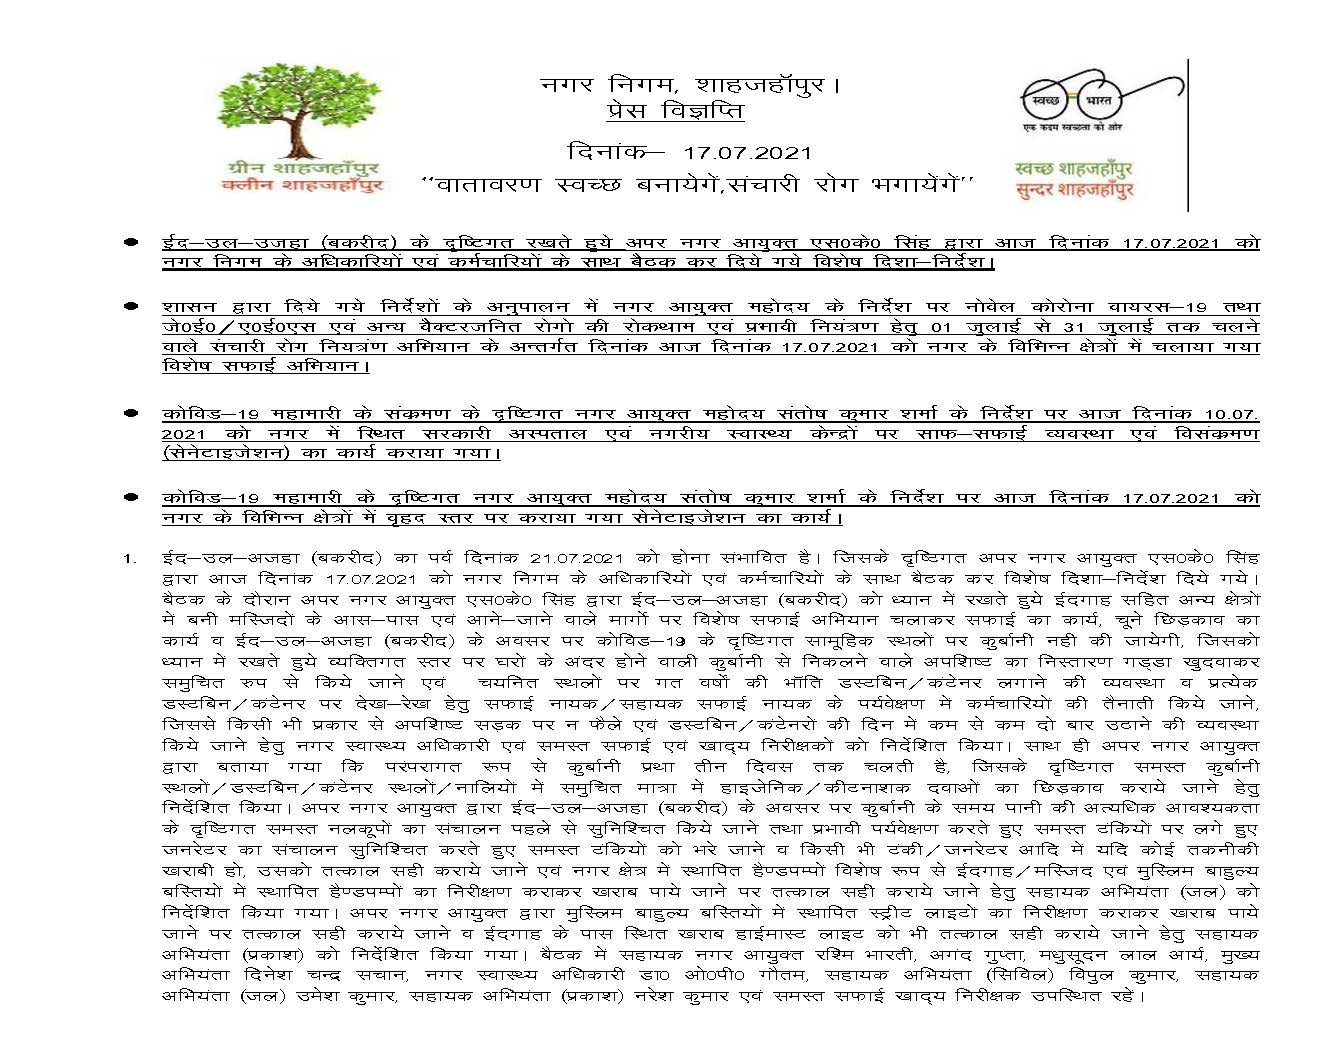 news 17-07-2021 – बकरीद के दृष्टिगत अपर नगर आयुक्त महोदय द्वारा दिनांक 17-07-2021 को नगर निगम के अधिकारियों व कर्मचारियों के साथ बैठक की गई।